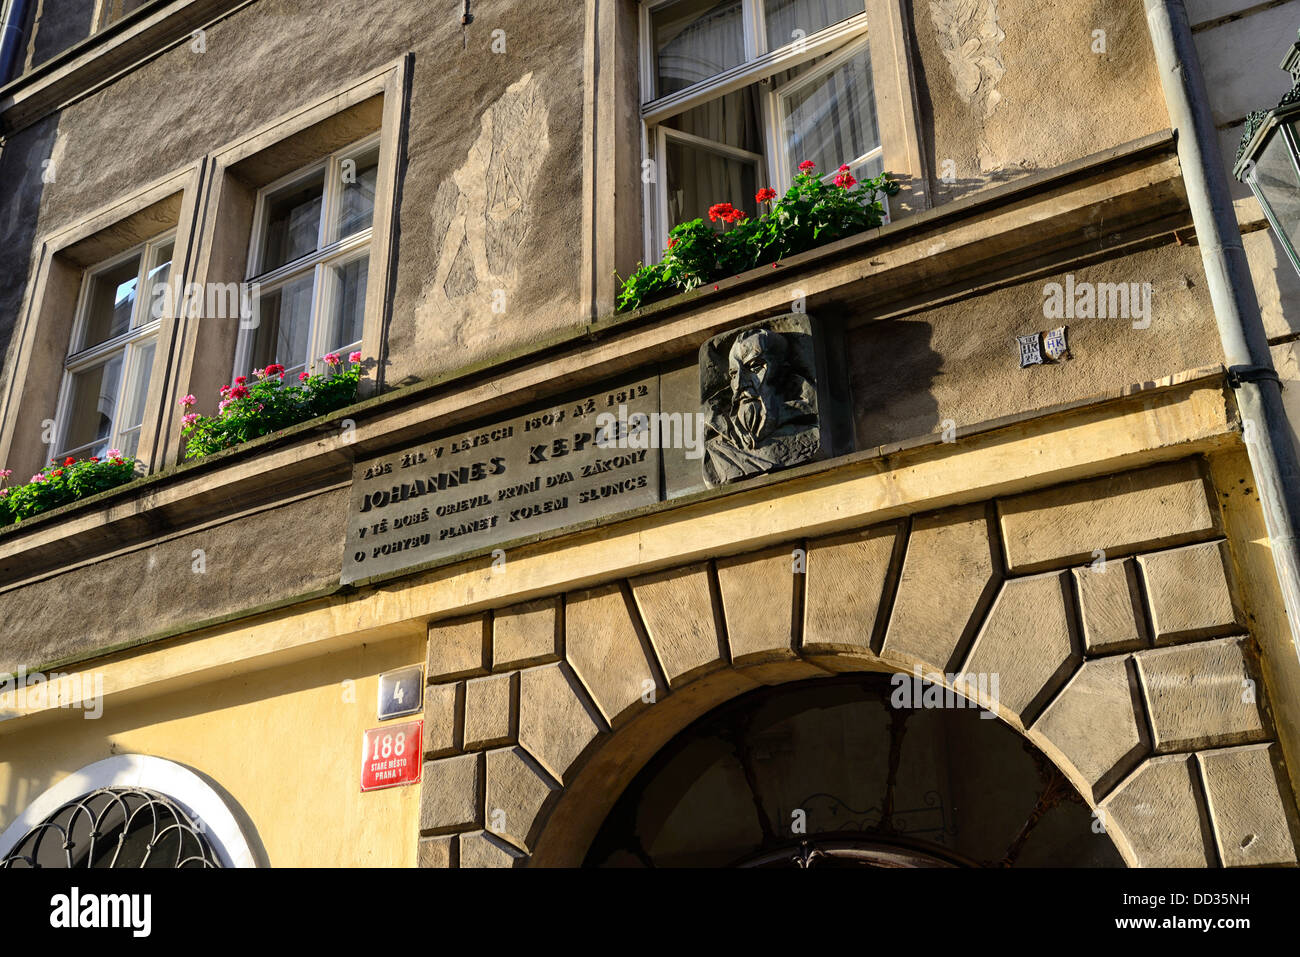 Chambre habitée par Johannes Kepler près de Pont Charles, Prague, République Tchèque, Europe Banque D'Images